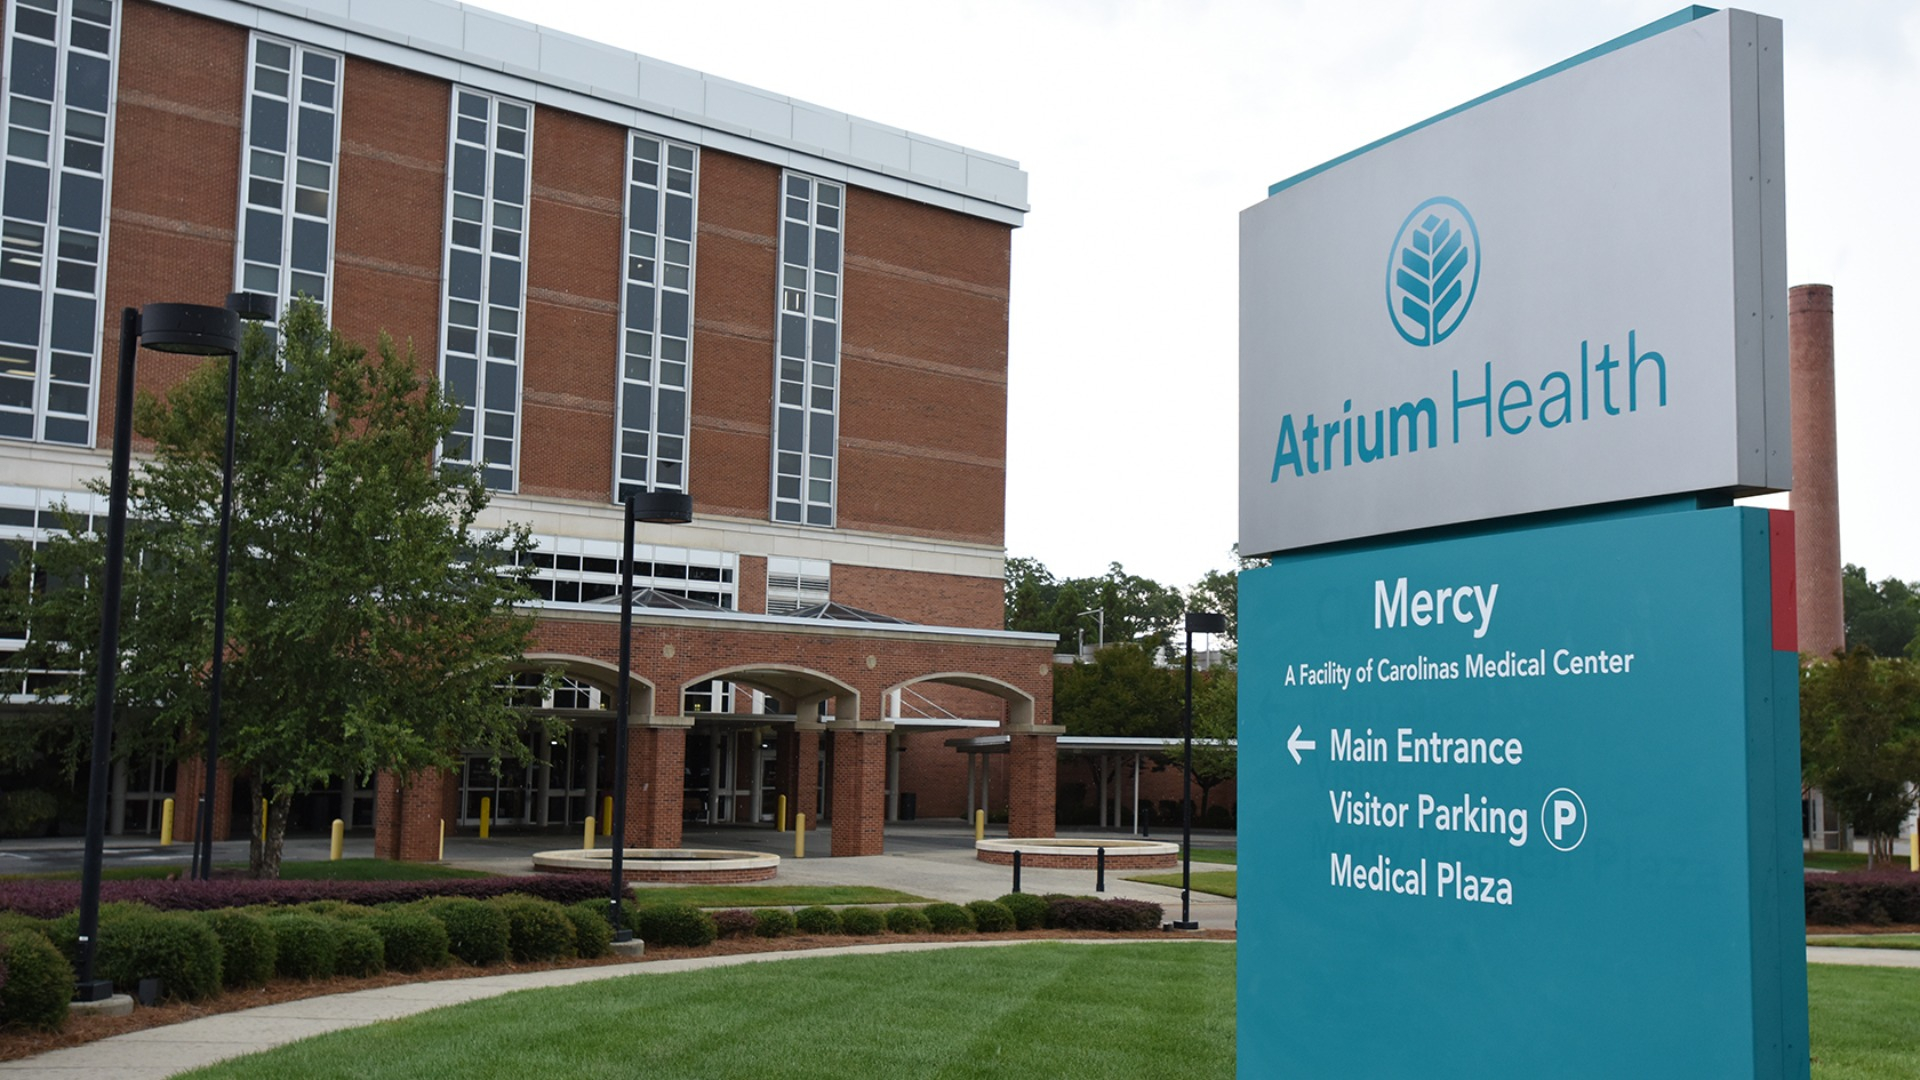 Atrium Health Mercy featured 